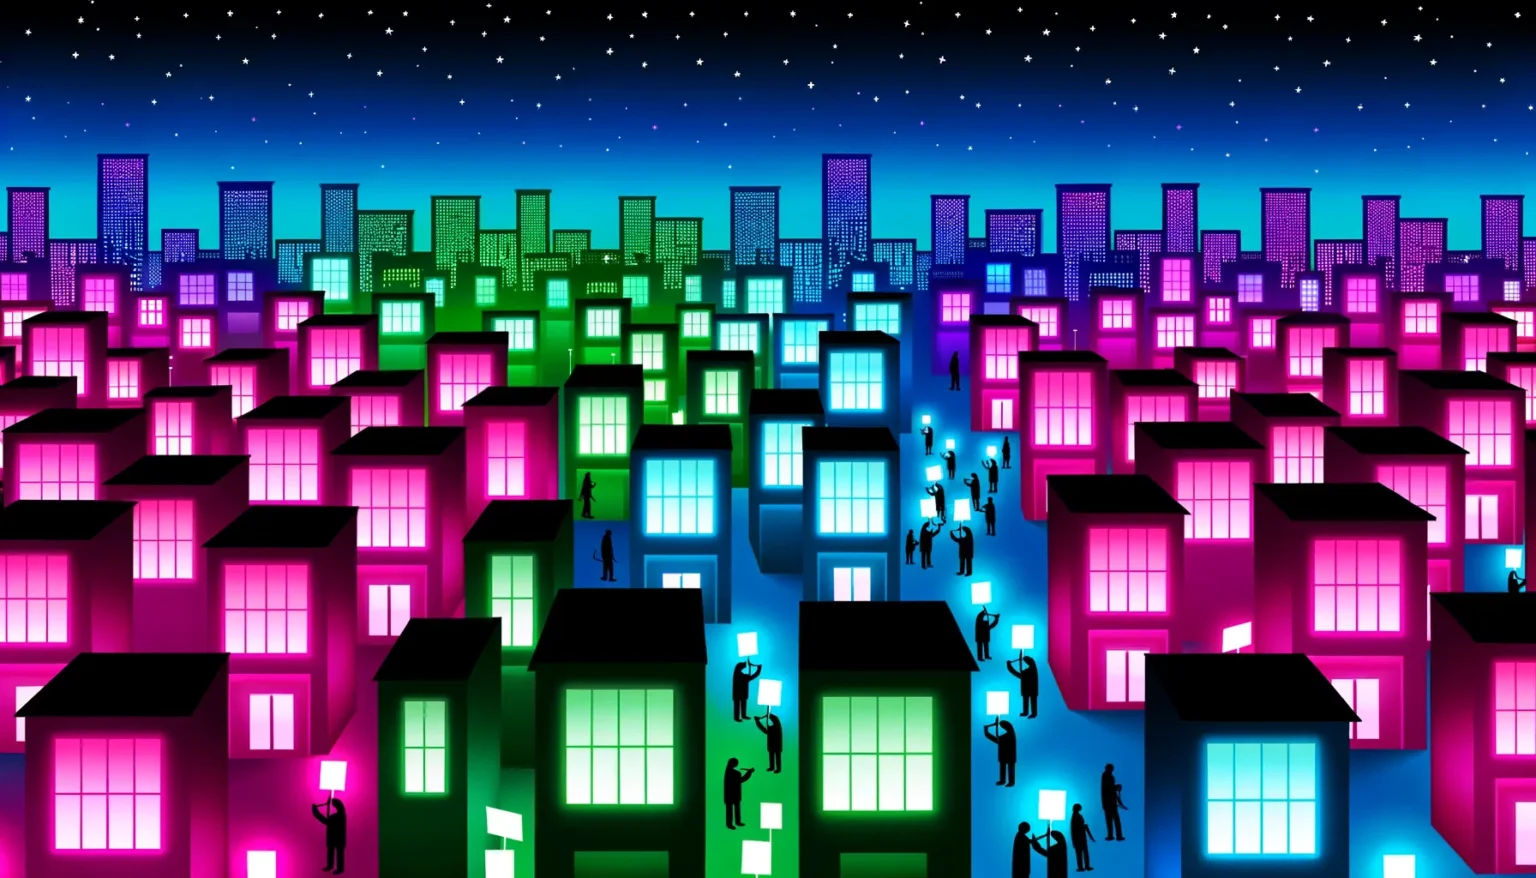 Eine bunte Illustration einer Stadt bei Nacht mit mehreren Reihen von Häusern in Vordergrund, die in verschiedenen Neonfarben leuchten – Pink, Grün und Blau. Im Hintergrund sind Silhouetten von Hochhäusern zu sehen. Überall im Bild sind kleine Figuren, die wie Menschen aussehen und teilweise leuchtende Rechtecke halten. Der Himmel ist in einem Farbverlauf von Dunkelblau zu Schwarz gestaltet und mit zahlreichen kleinen Sternen übersät.